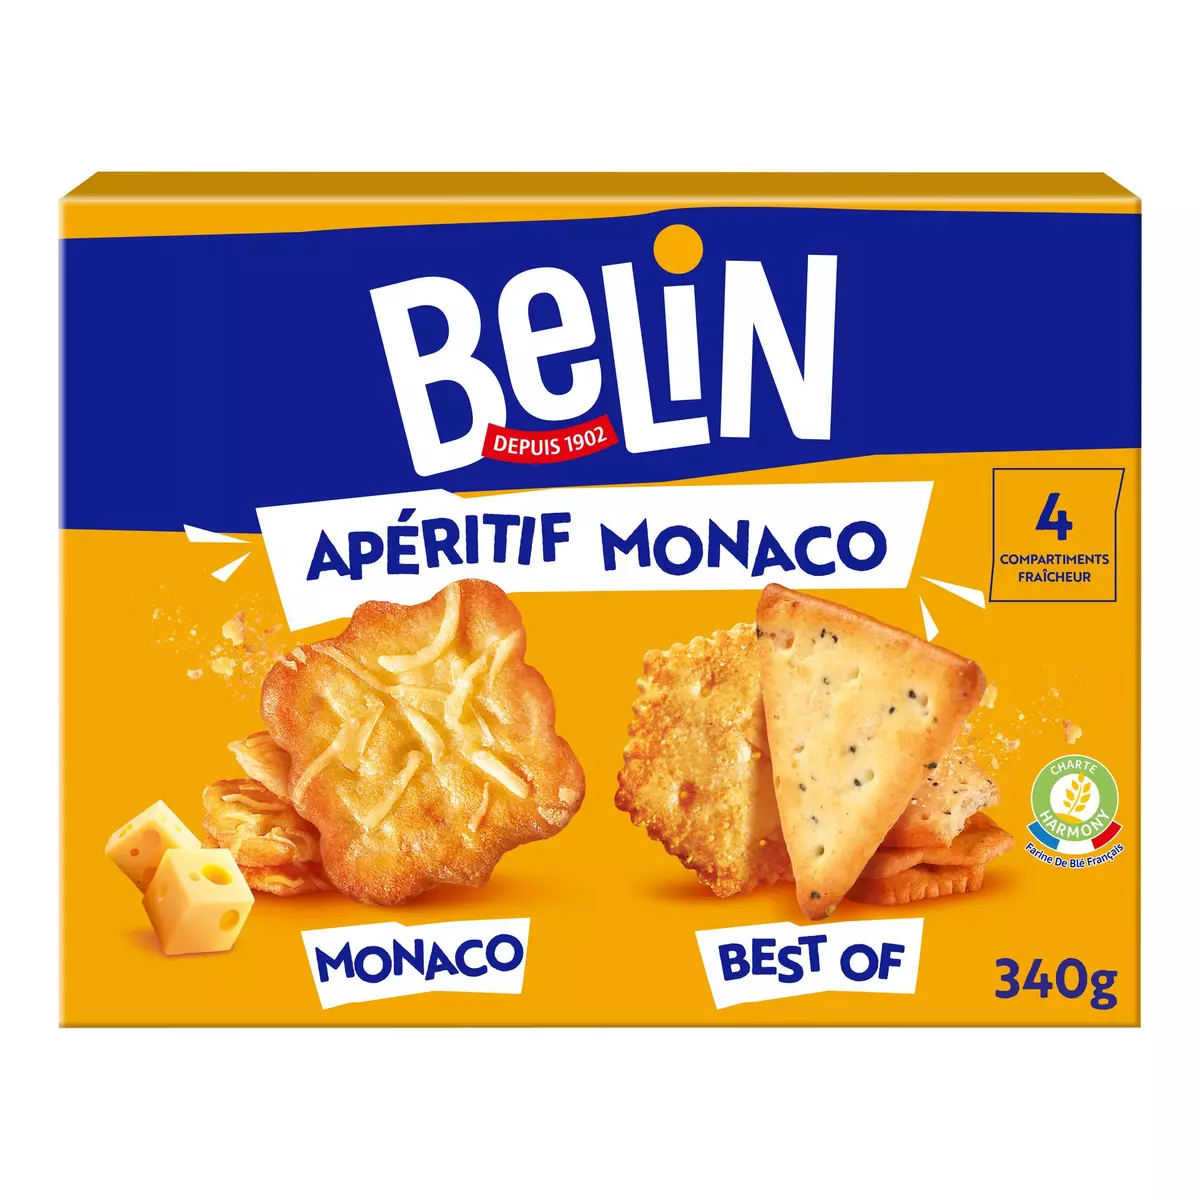 BELIN Biscuits assortiment crackers Apéritif Monaco 340g